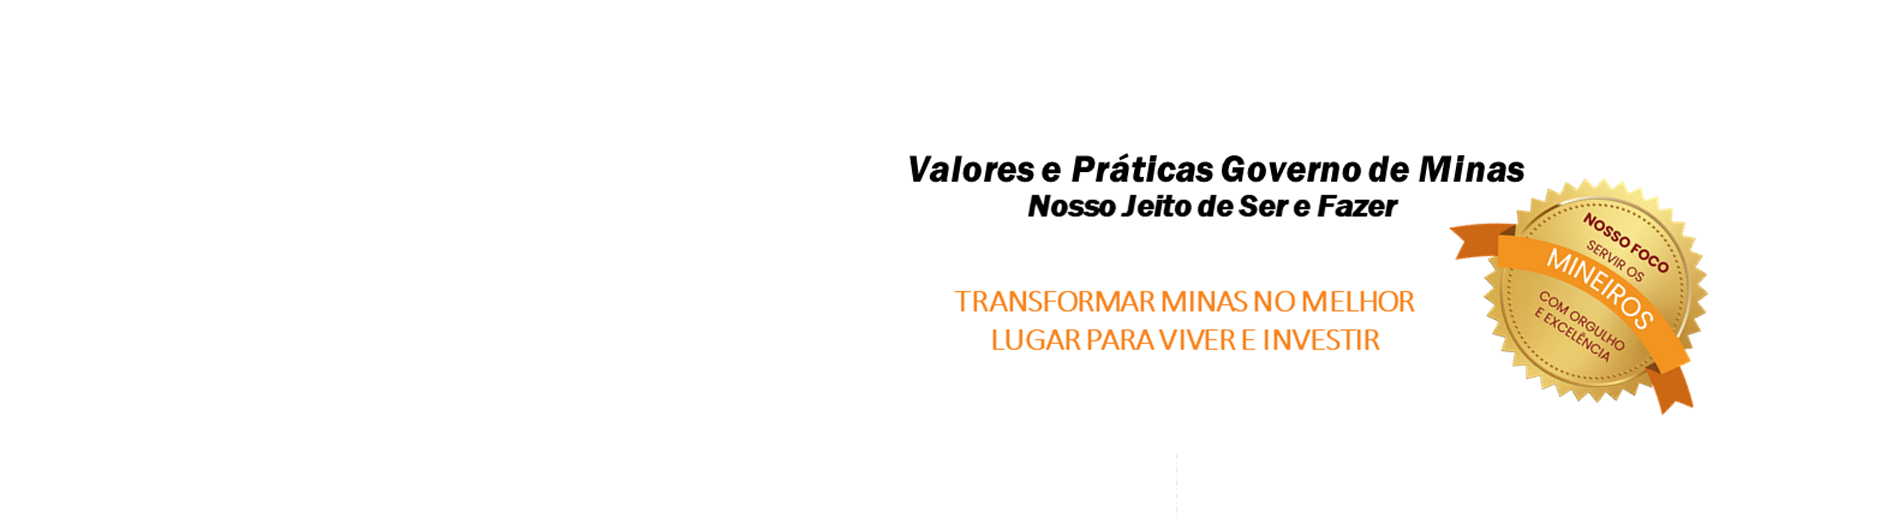 Valores_e_Praticas4.png